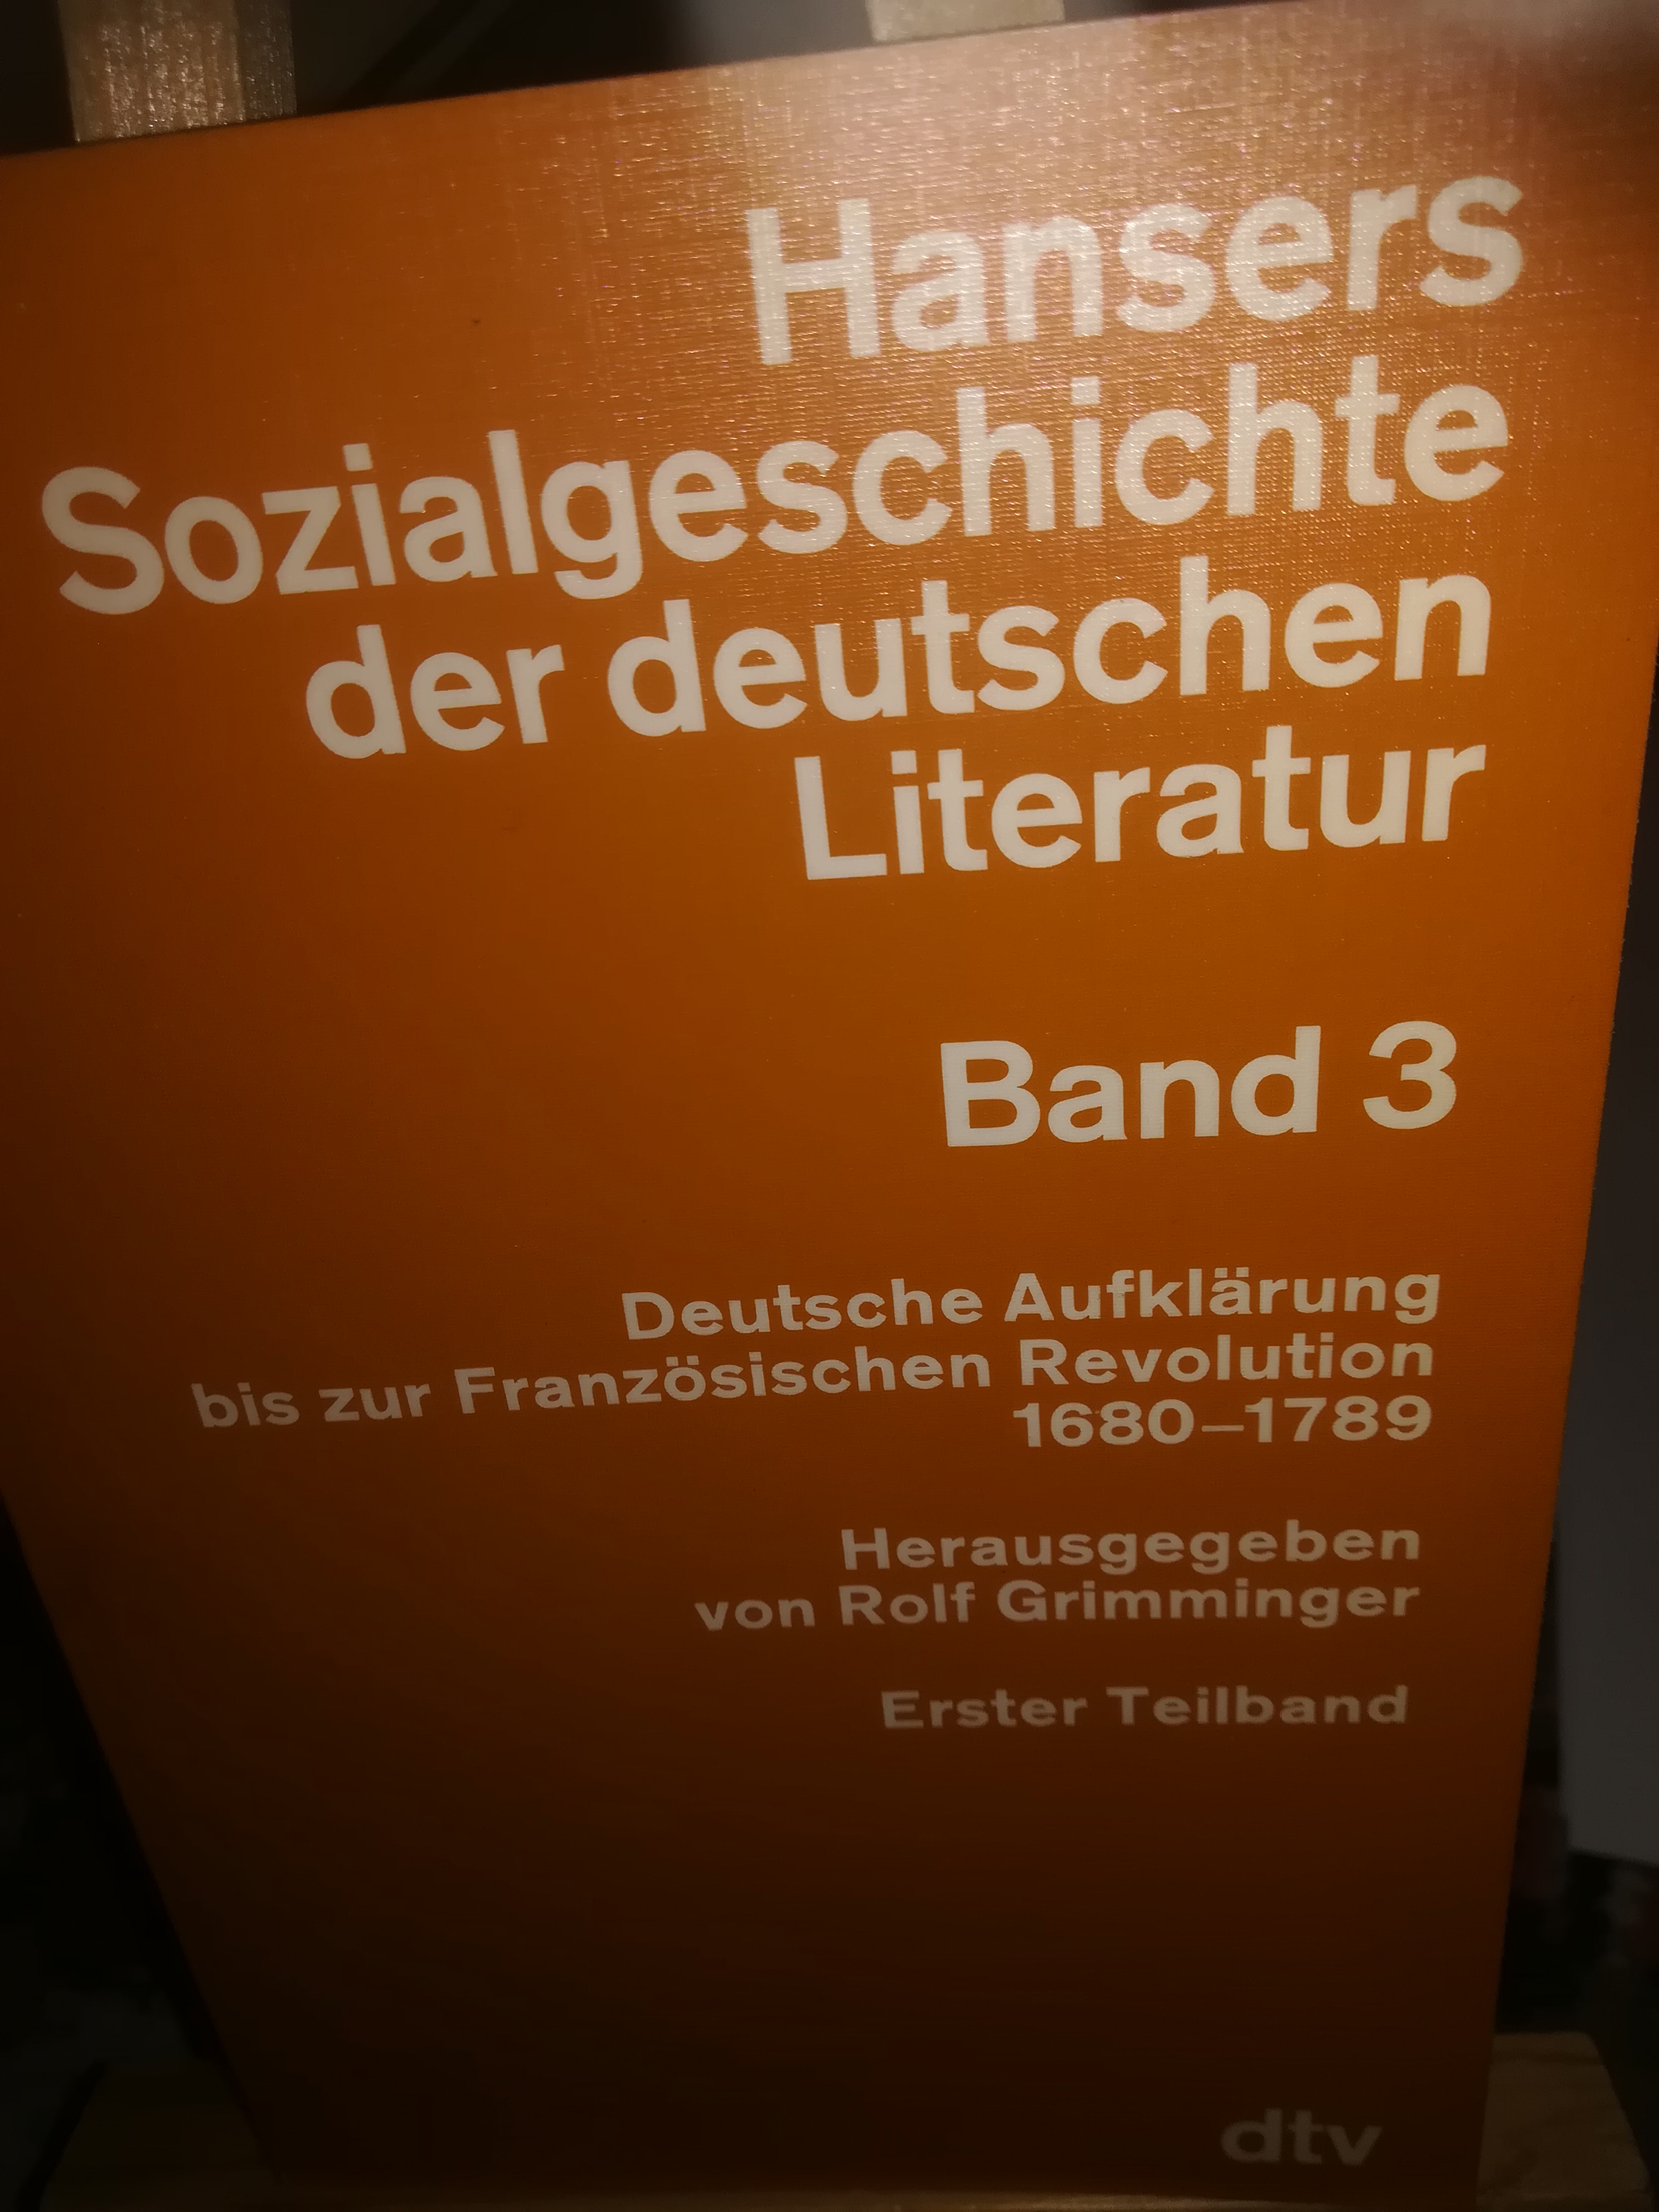 Hansers Sozialgeschichte der deutschen Literatur Band 3, Deutsche Aufklärung bis zur Französischen Revolution 1680-1789, Erster Teilband